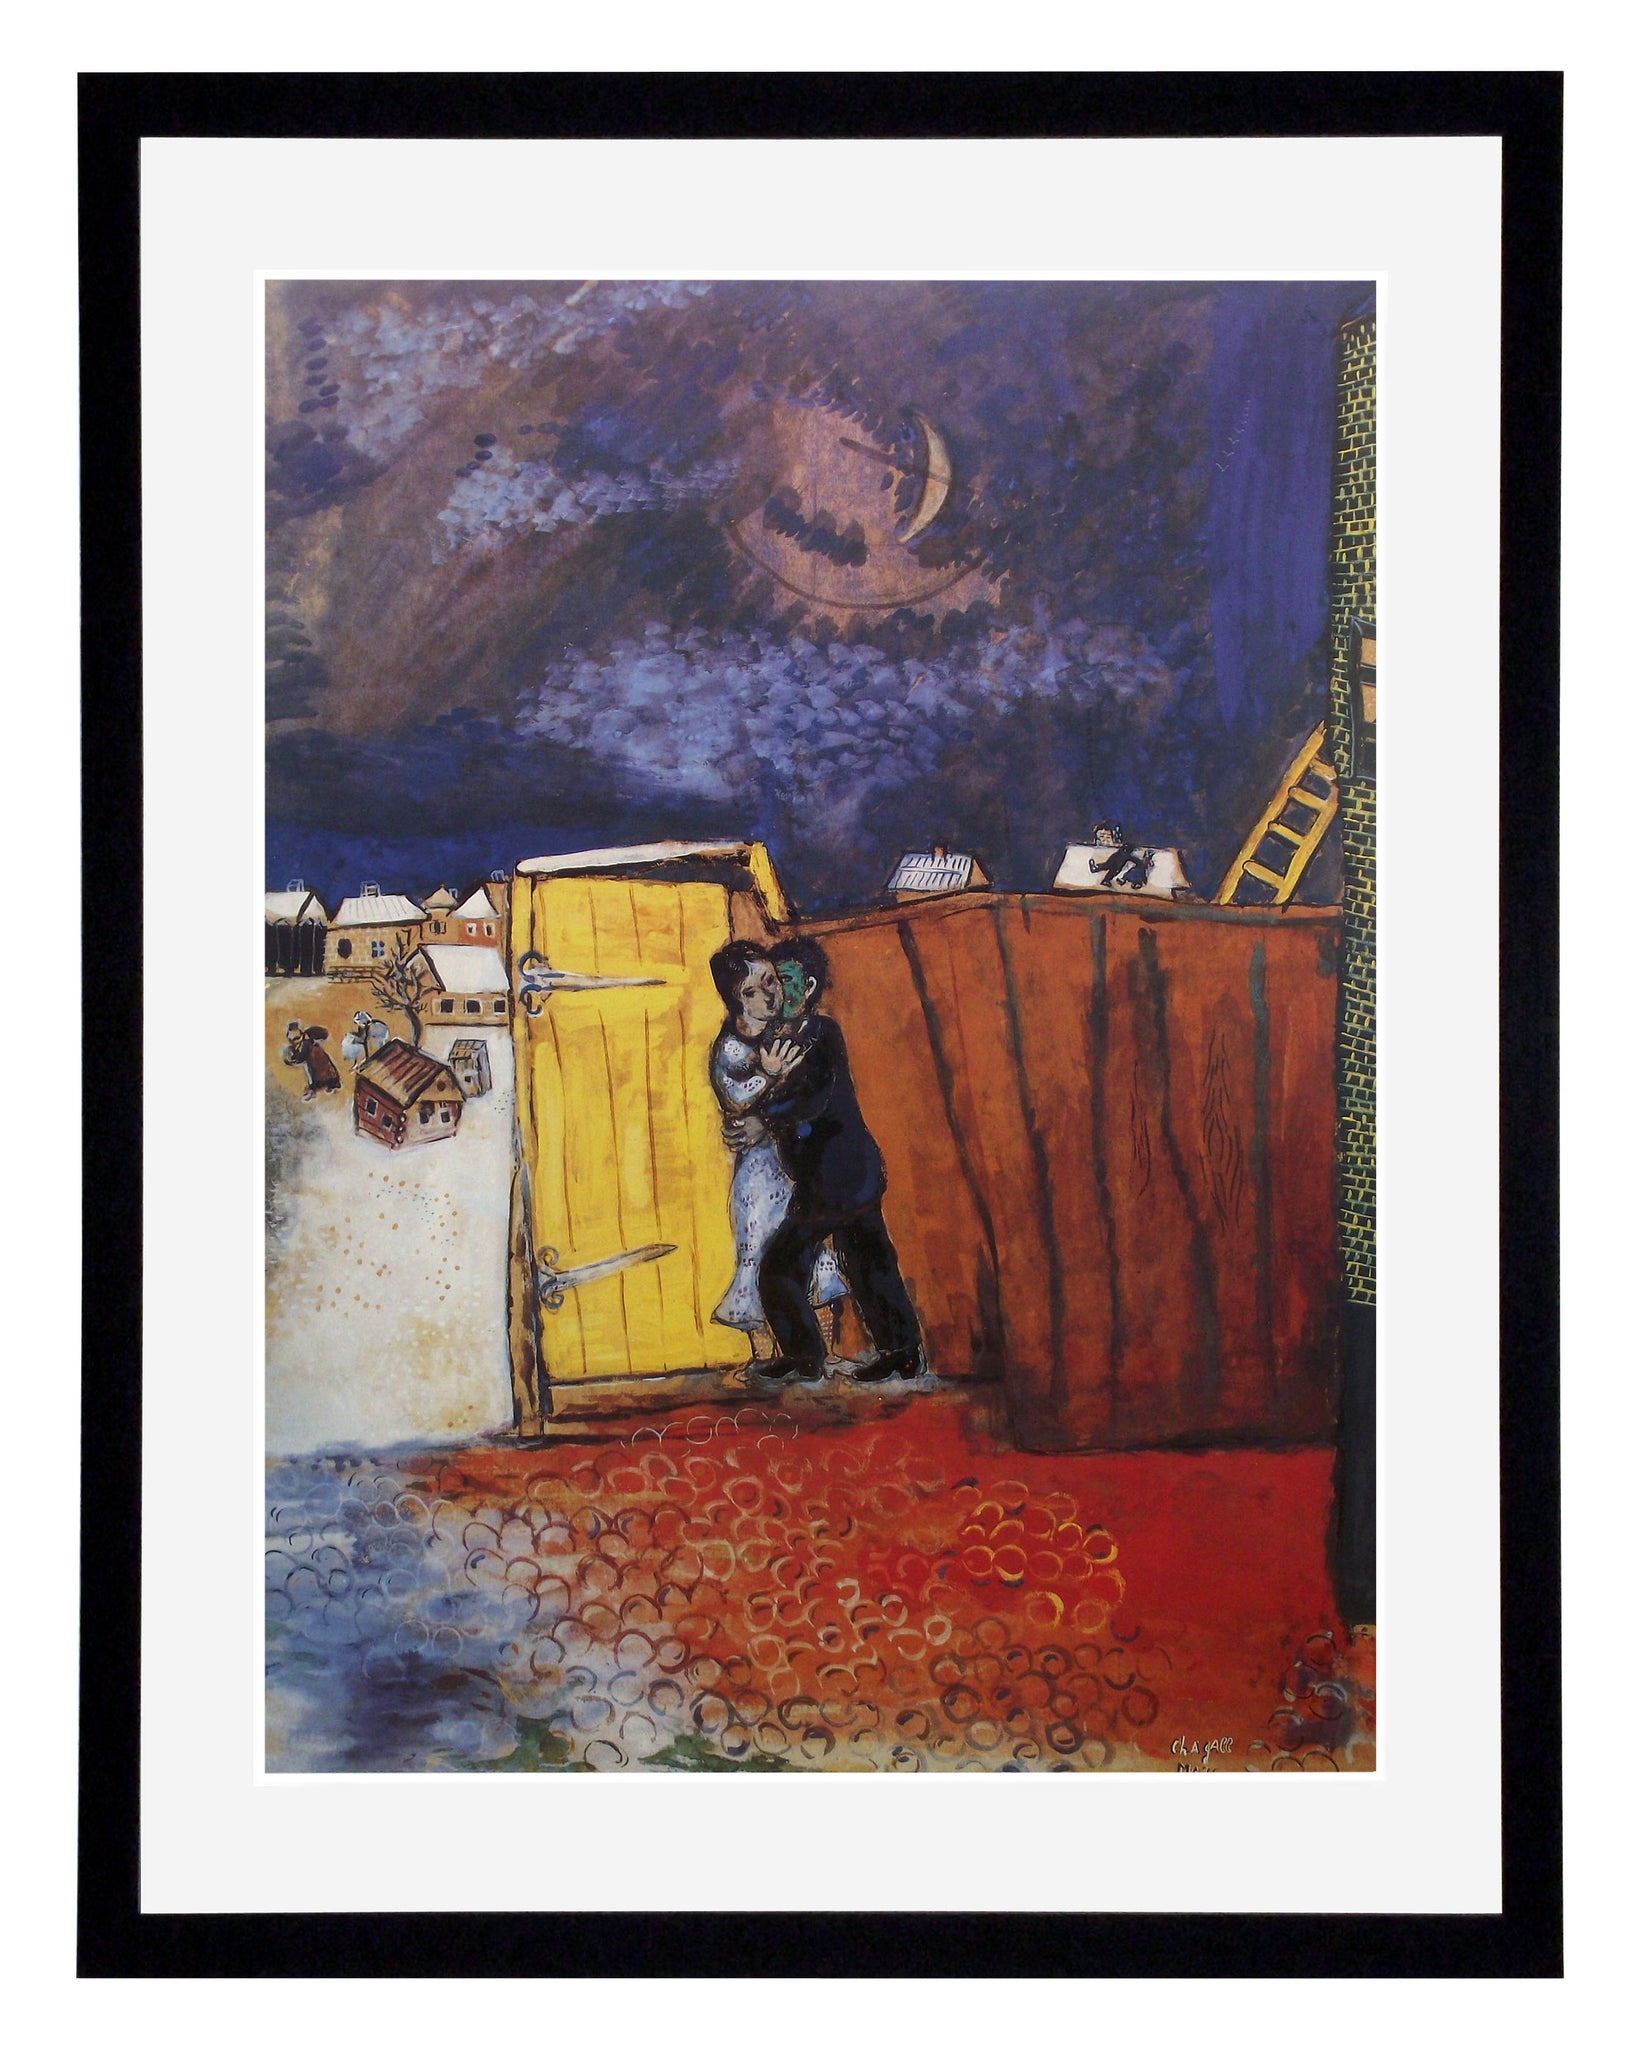 Obraz - Marc Chagall, Światło księżyca - reprodukcja w ramie N620 60x77 cm